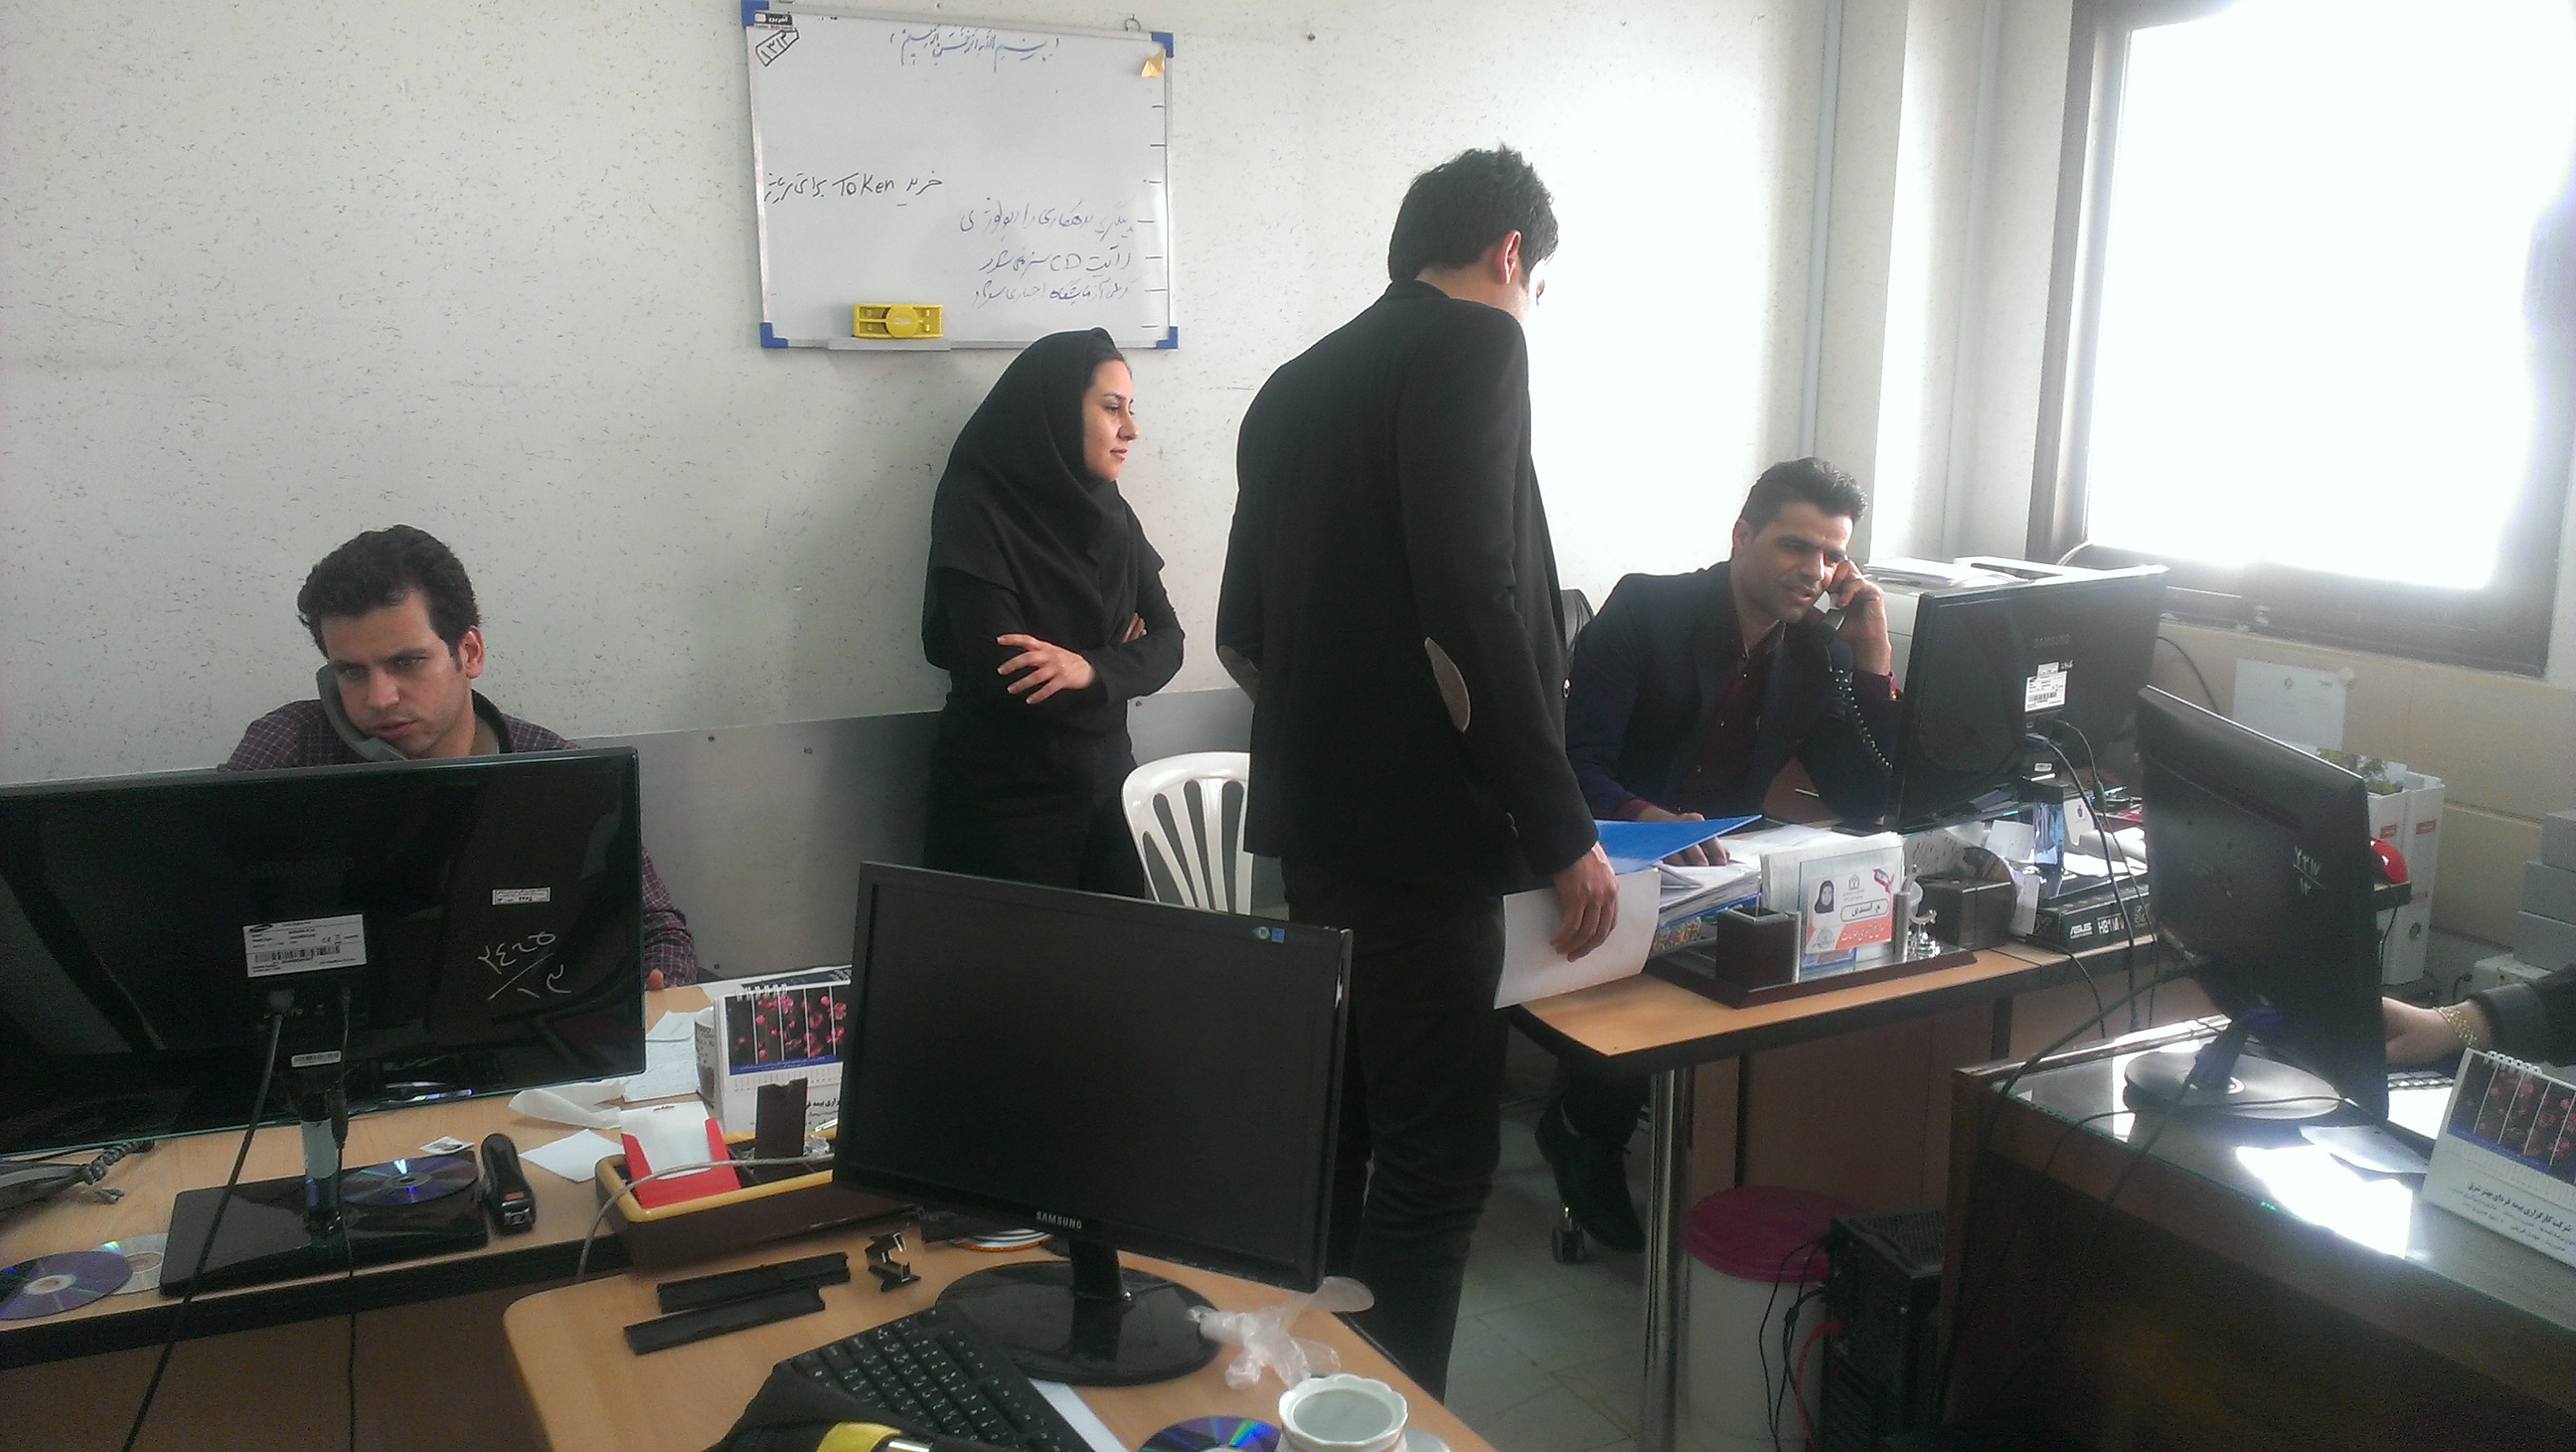 راه اندازی سرویس نظام ارجاع الکترونیکی در دانشگاه علوم پزشکی خراسان شمالی